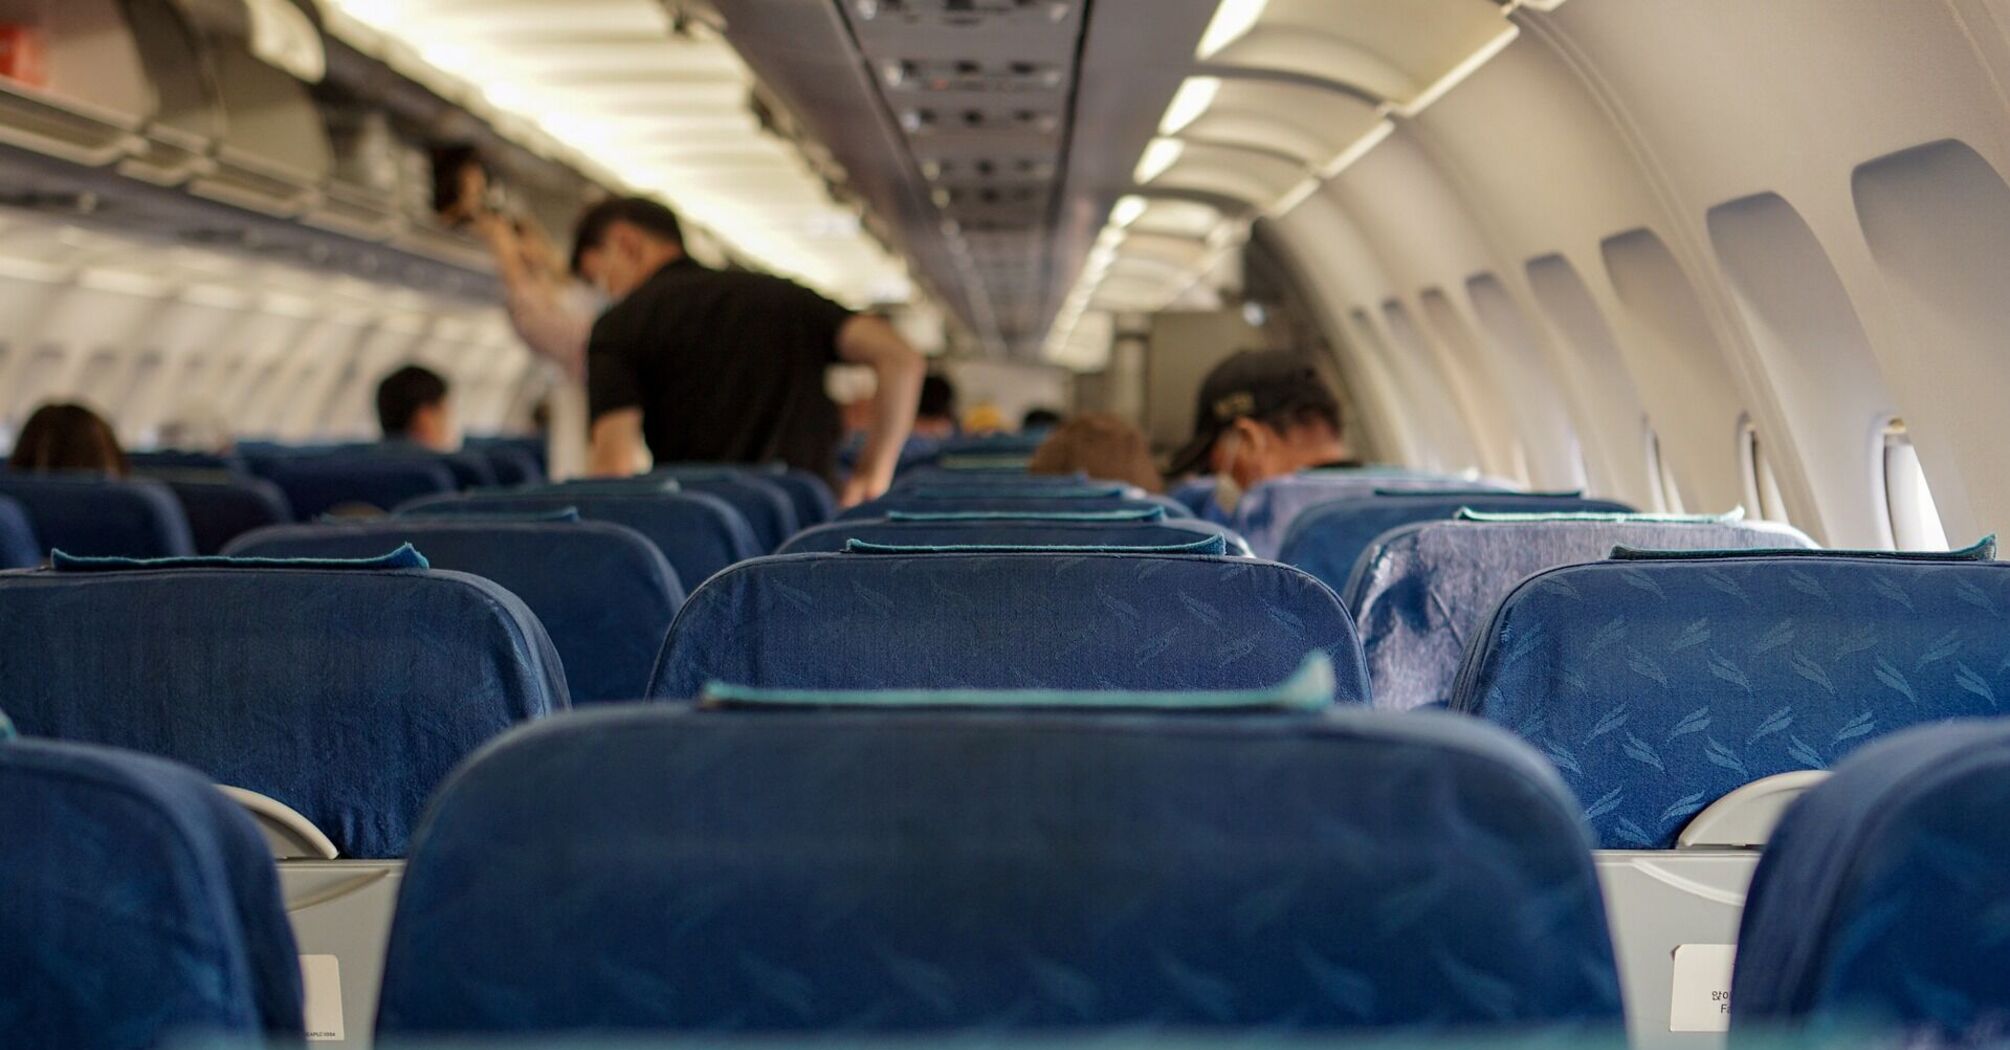 Passengers board an airline flight